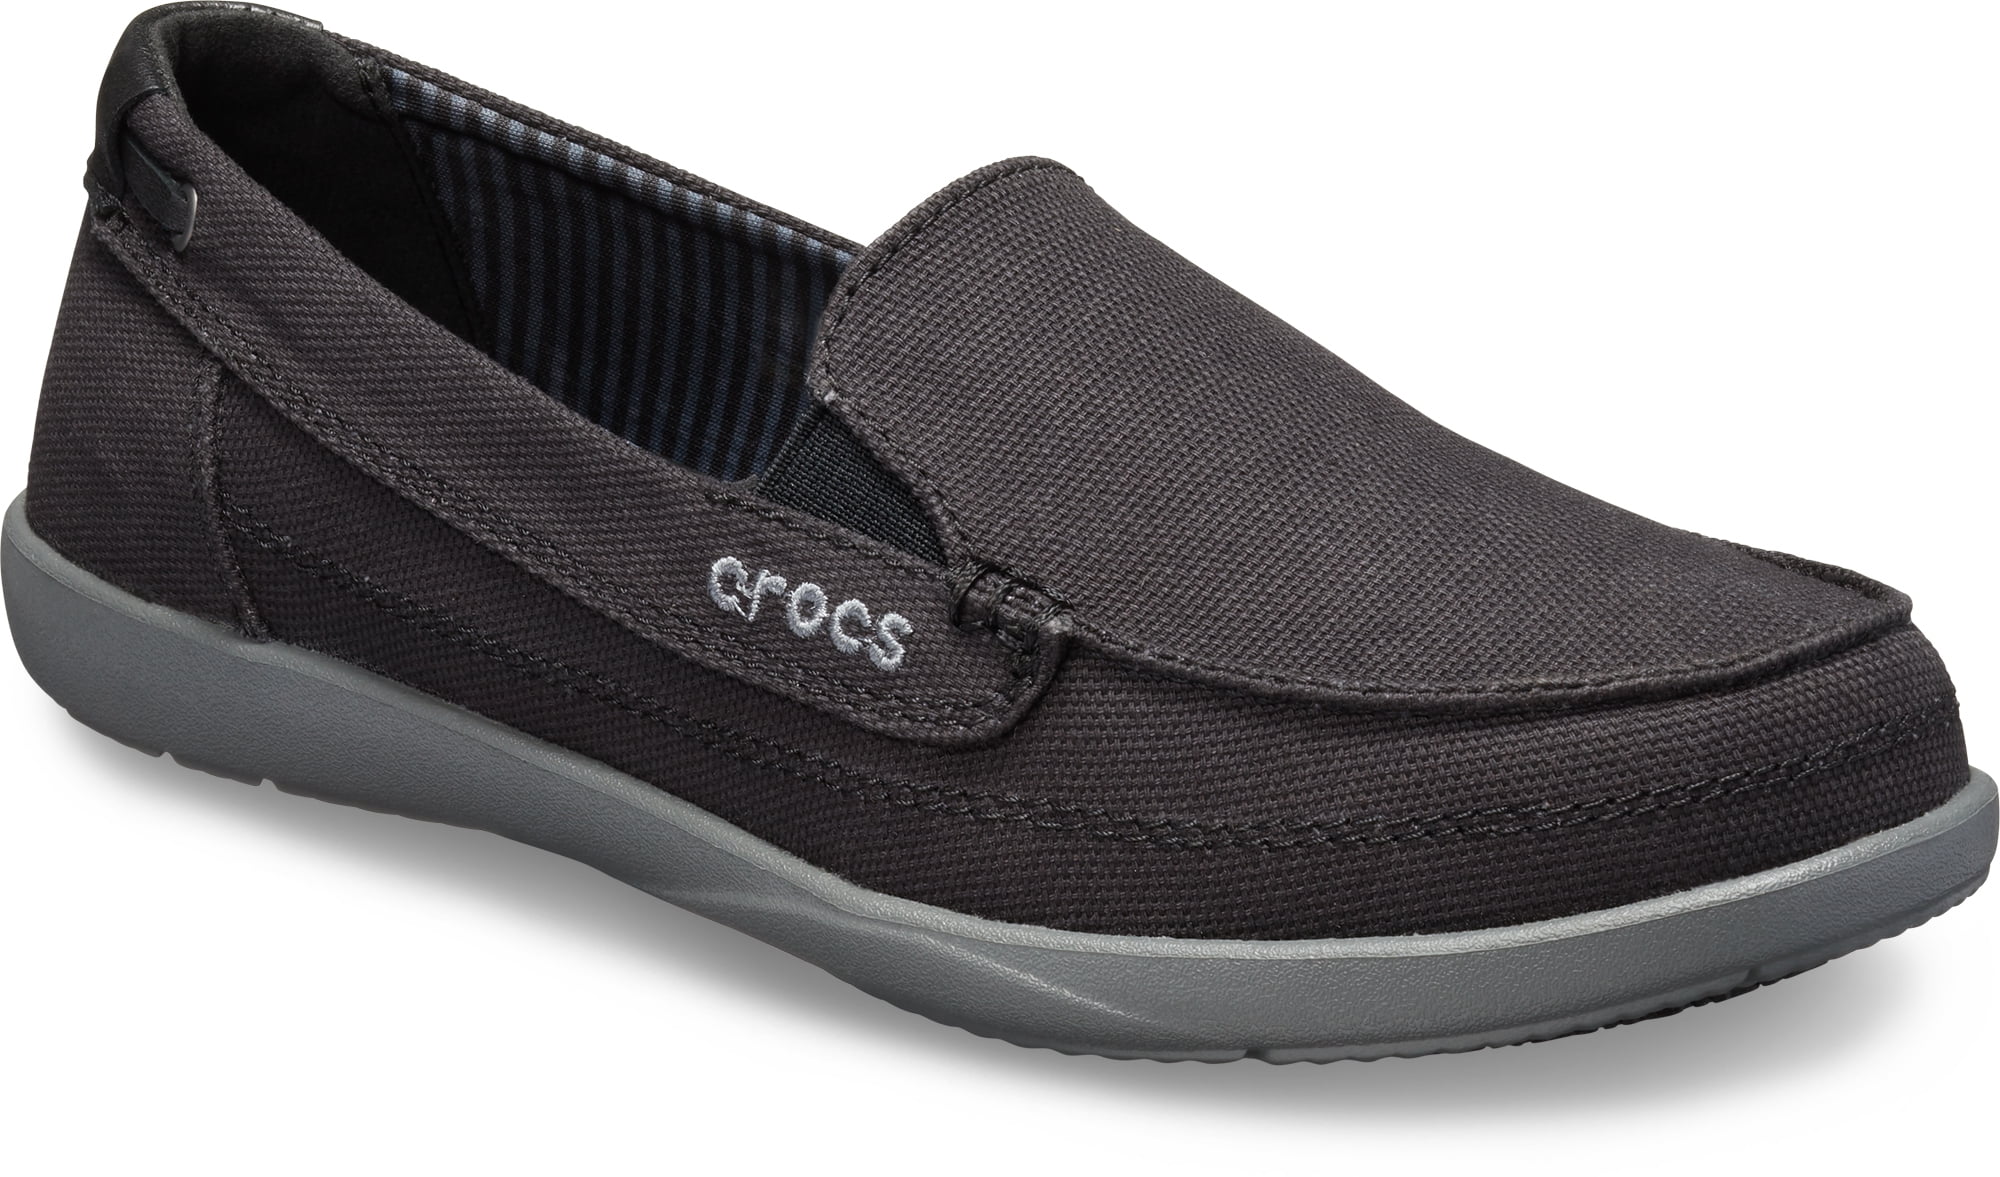 Ladies crocs size